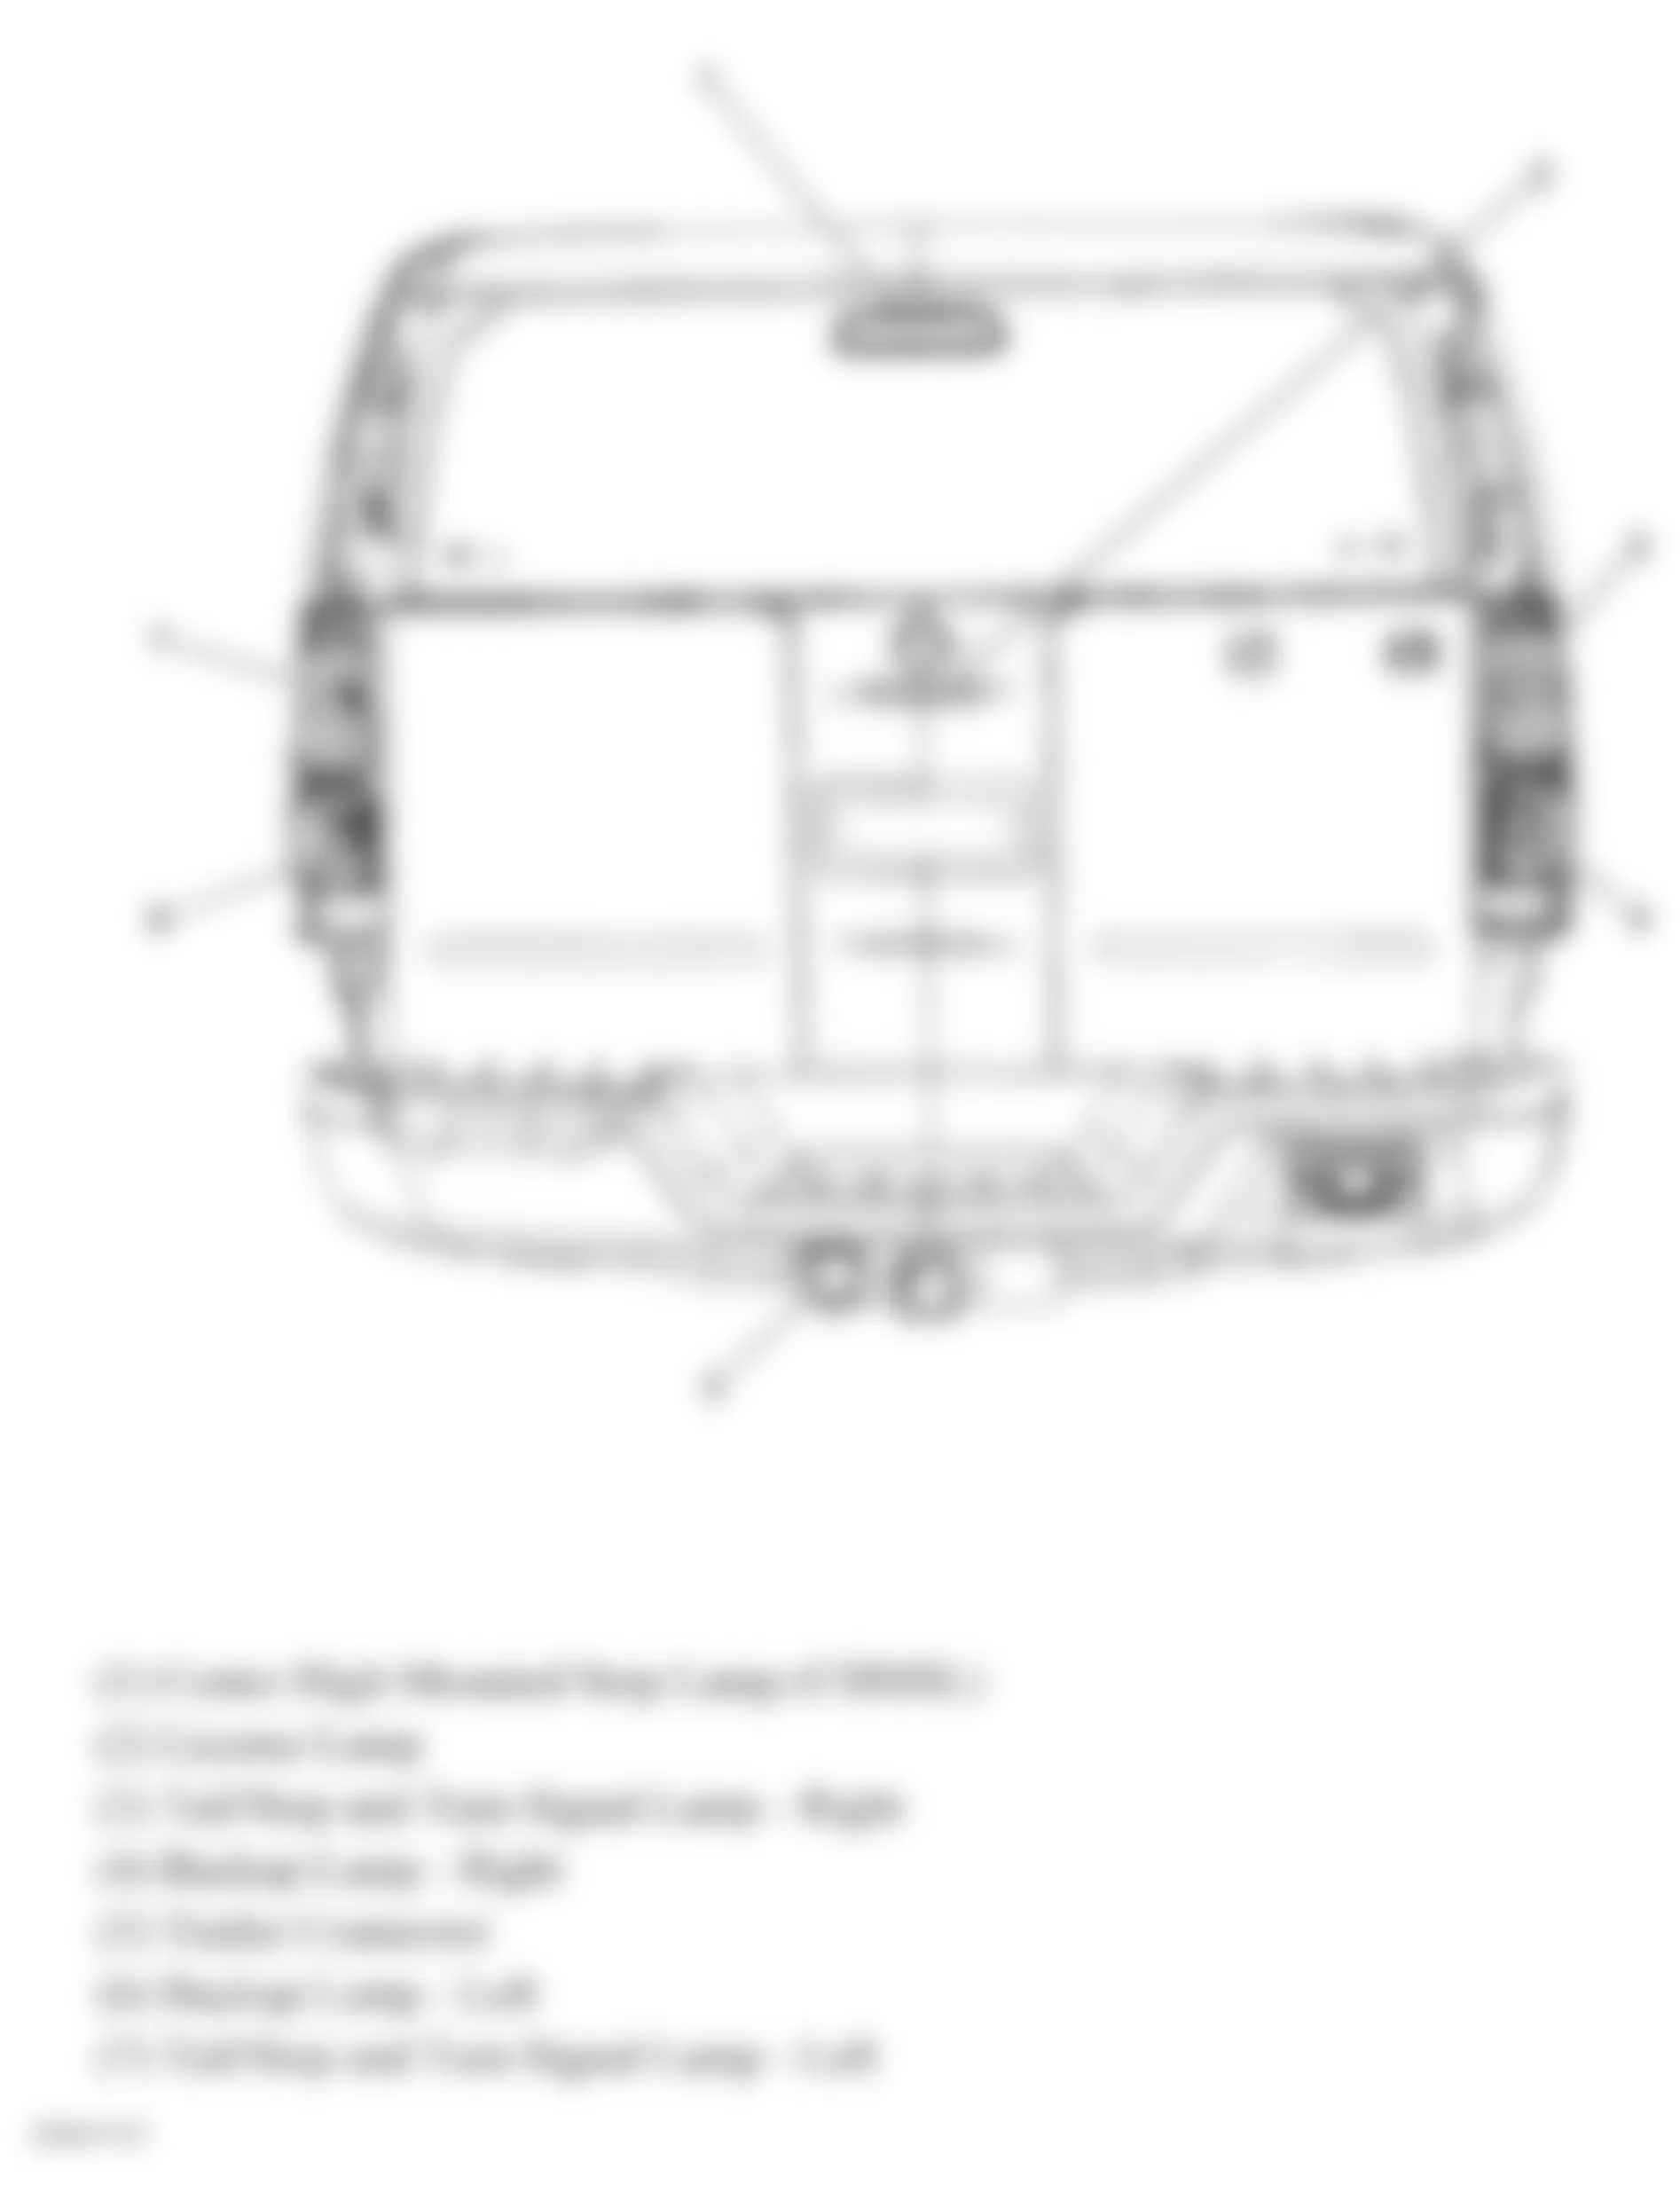 Hummer H3T Alpha 2009 - Component Locations -  Rear Exterior Lights